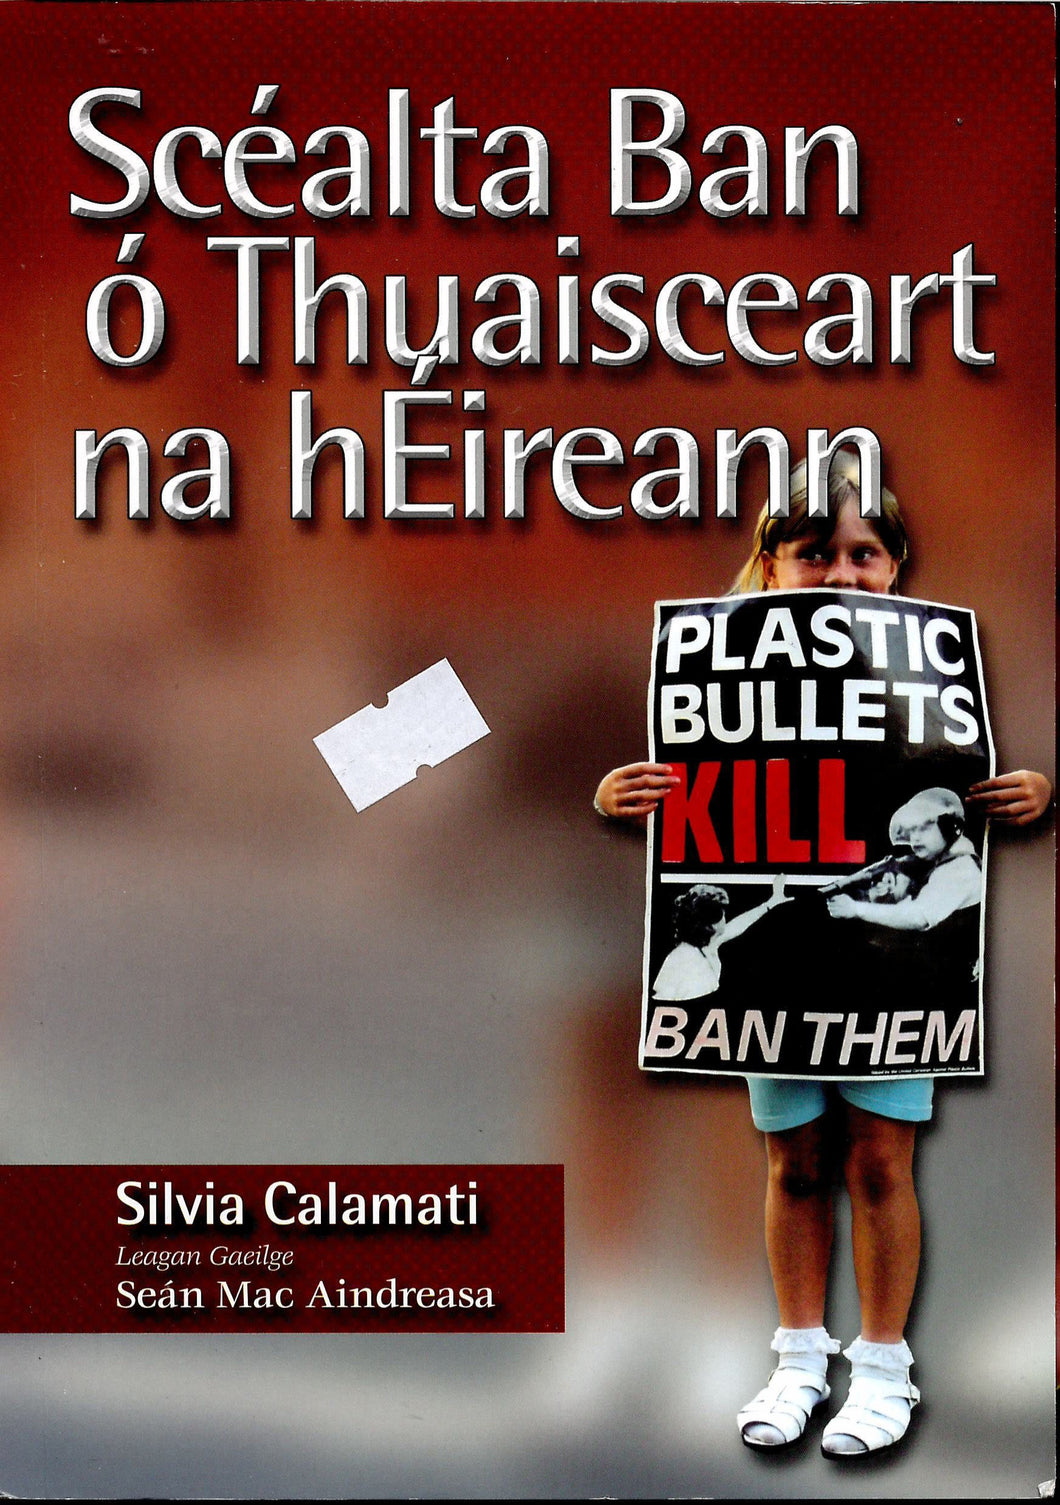 Scealta Ban o Thuaisceart na hEireann